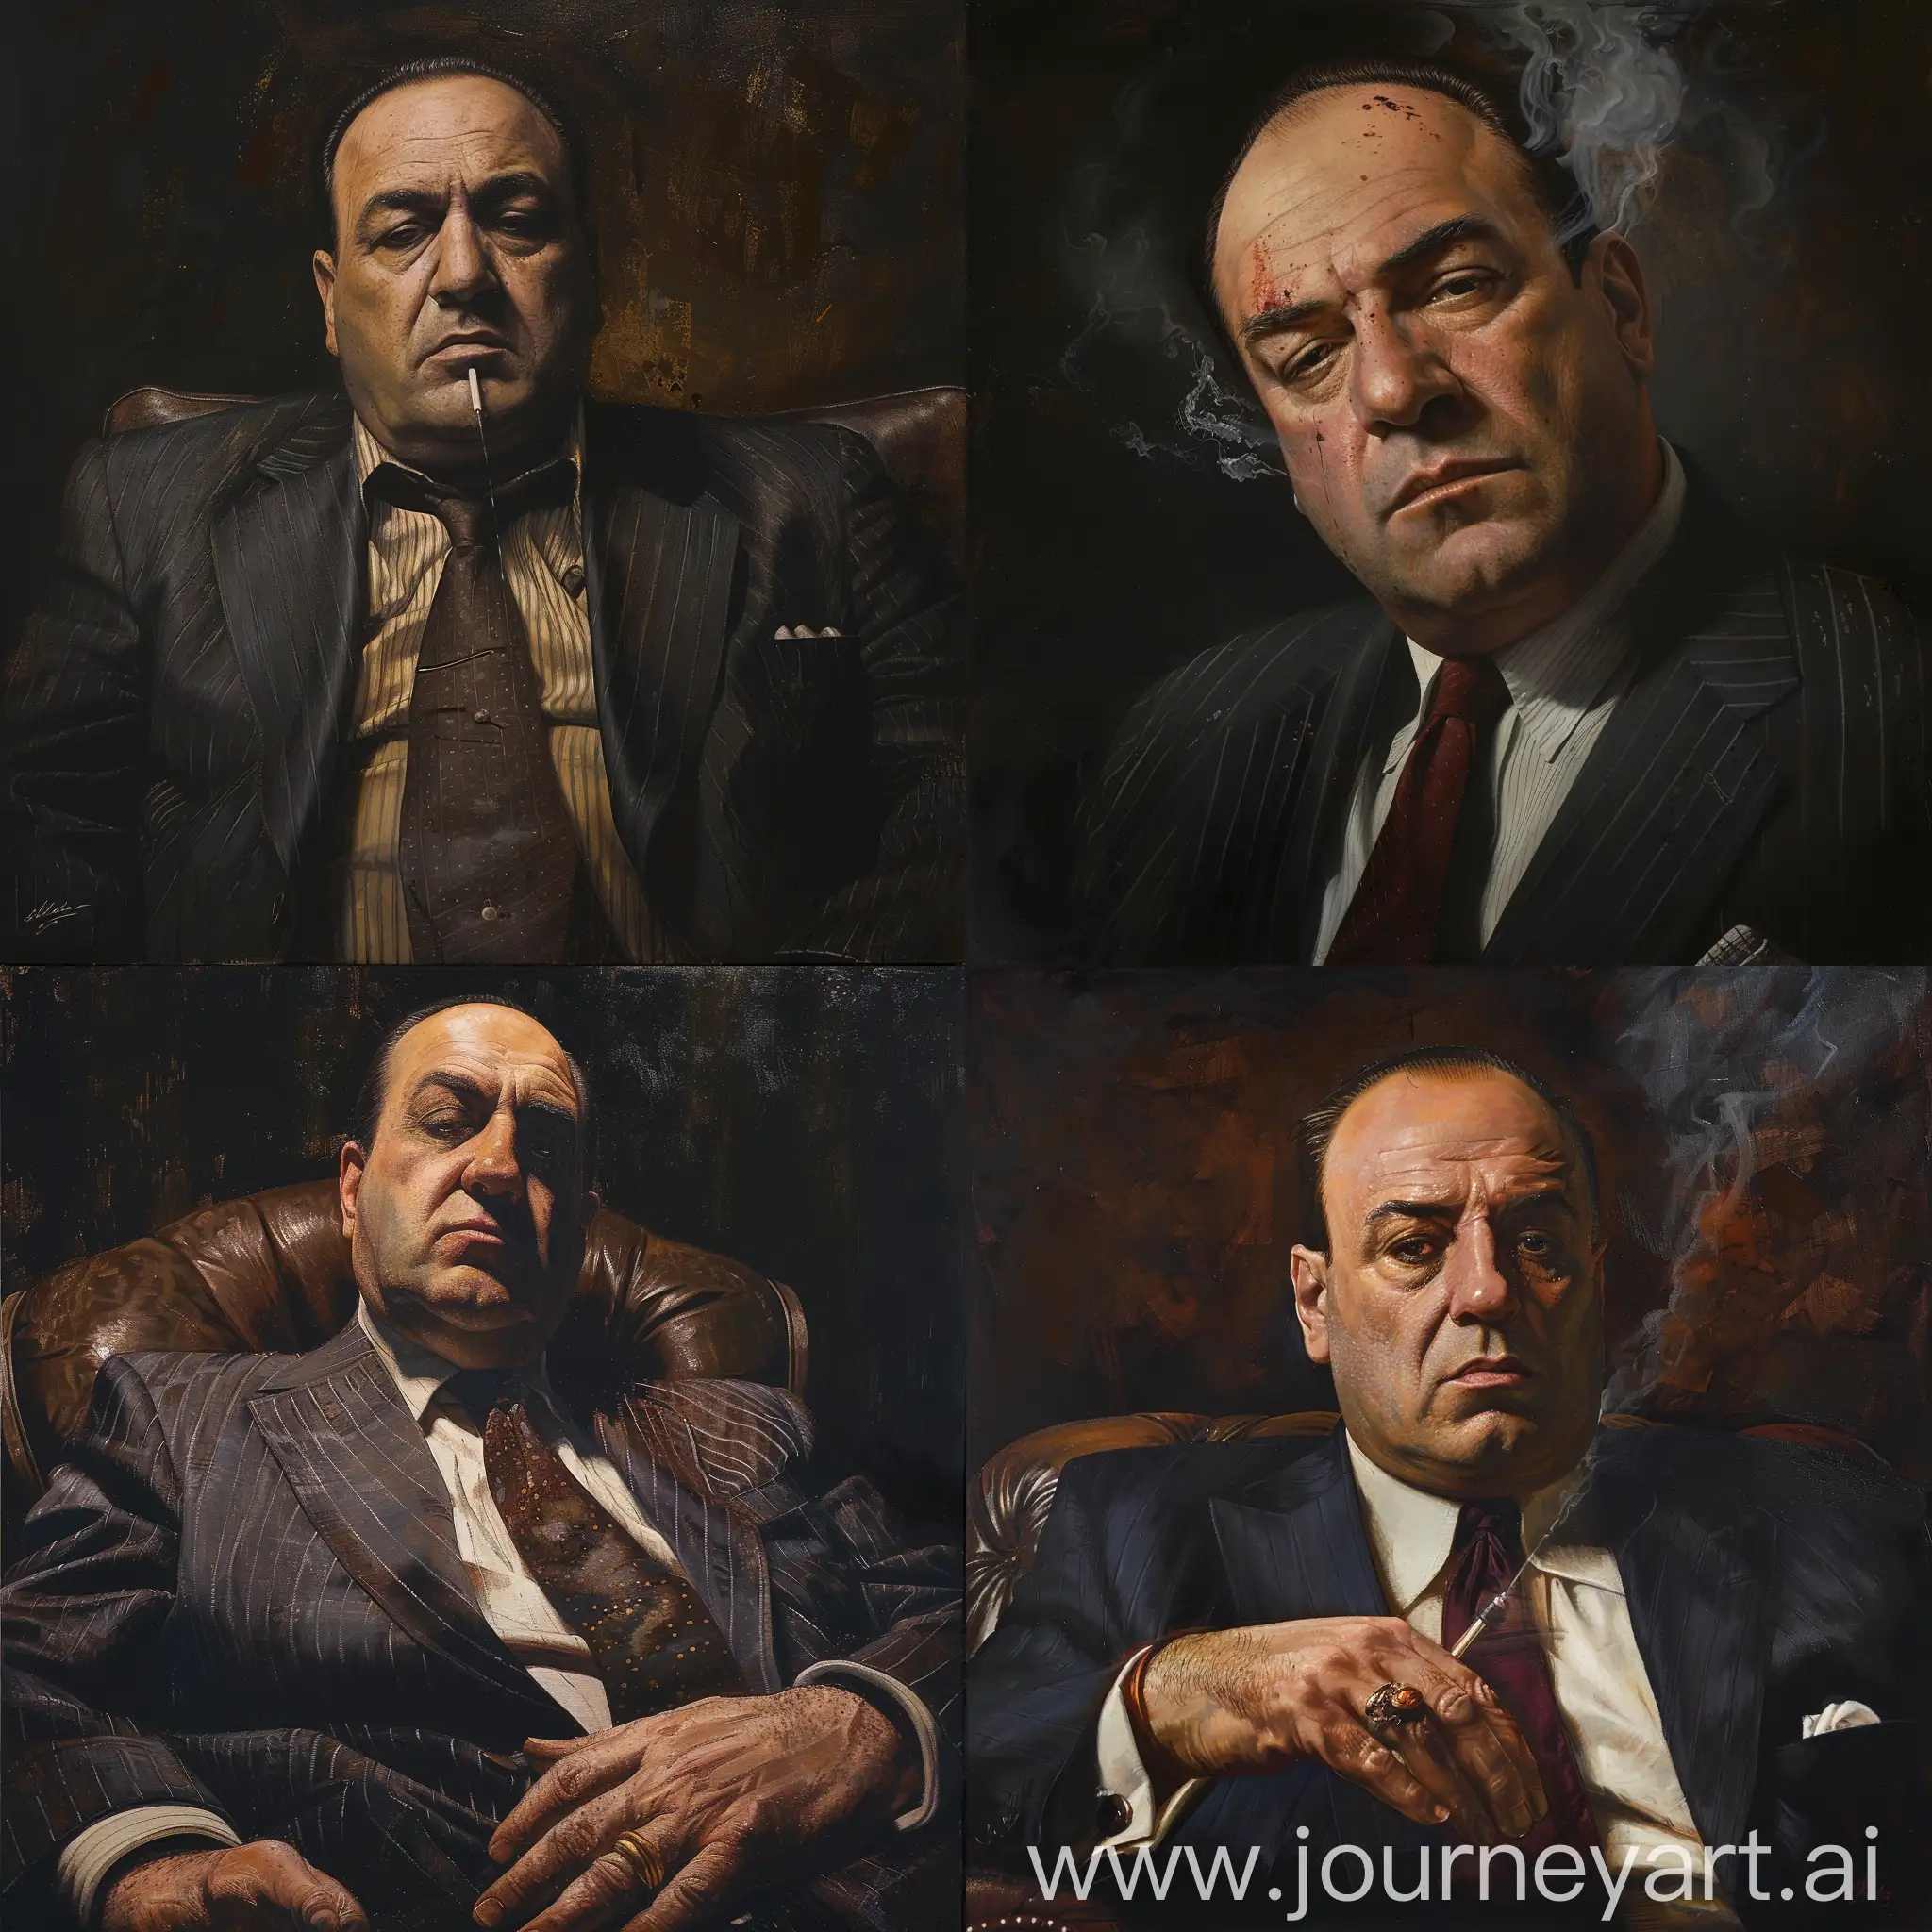 Tony-Soprano-Portrait-Intense-Stare-and-Dark-Background